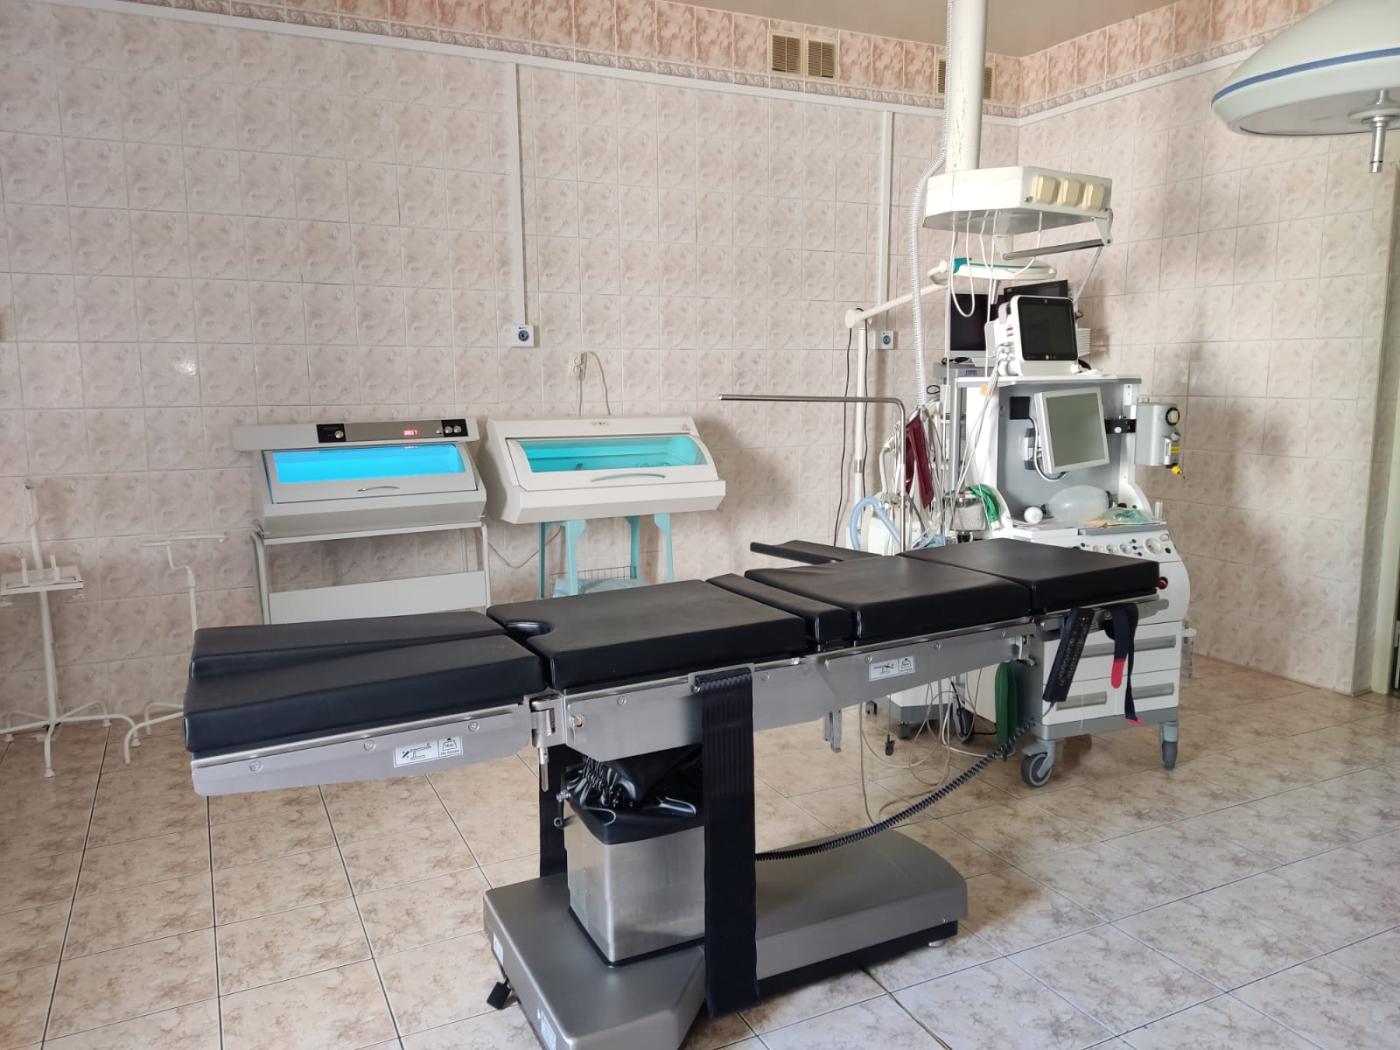 Сто двадцать хирургических вмешательств выполнено на новом операционном столе в Зеленоградской больнице